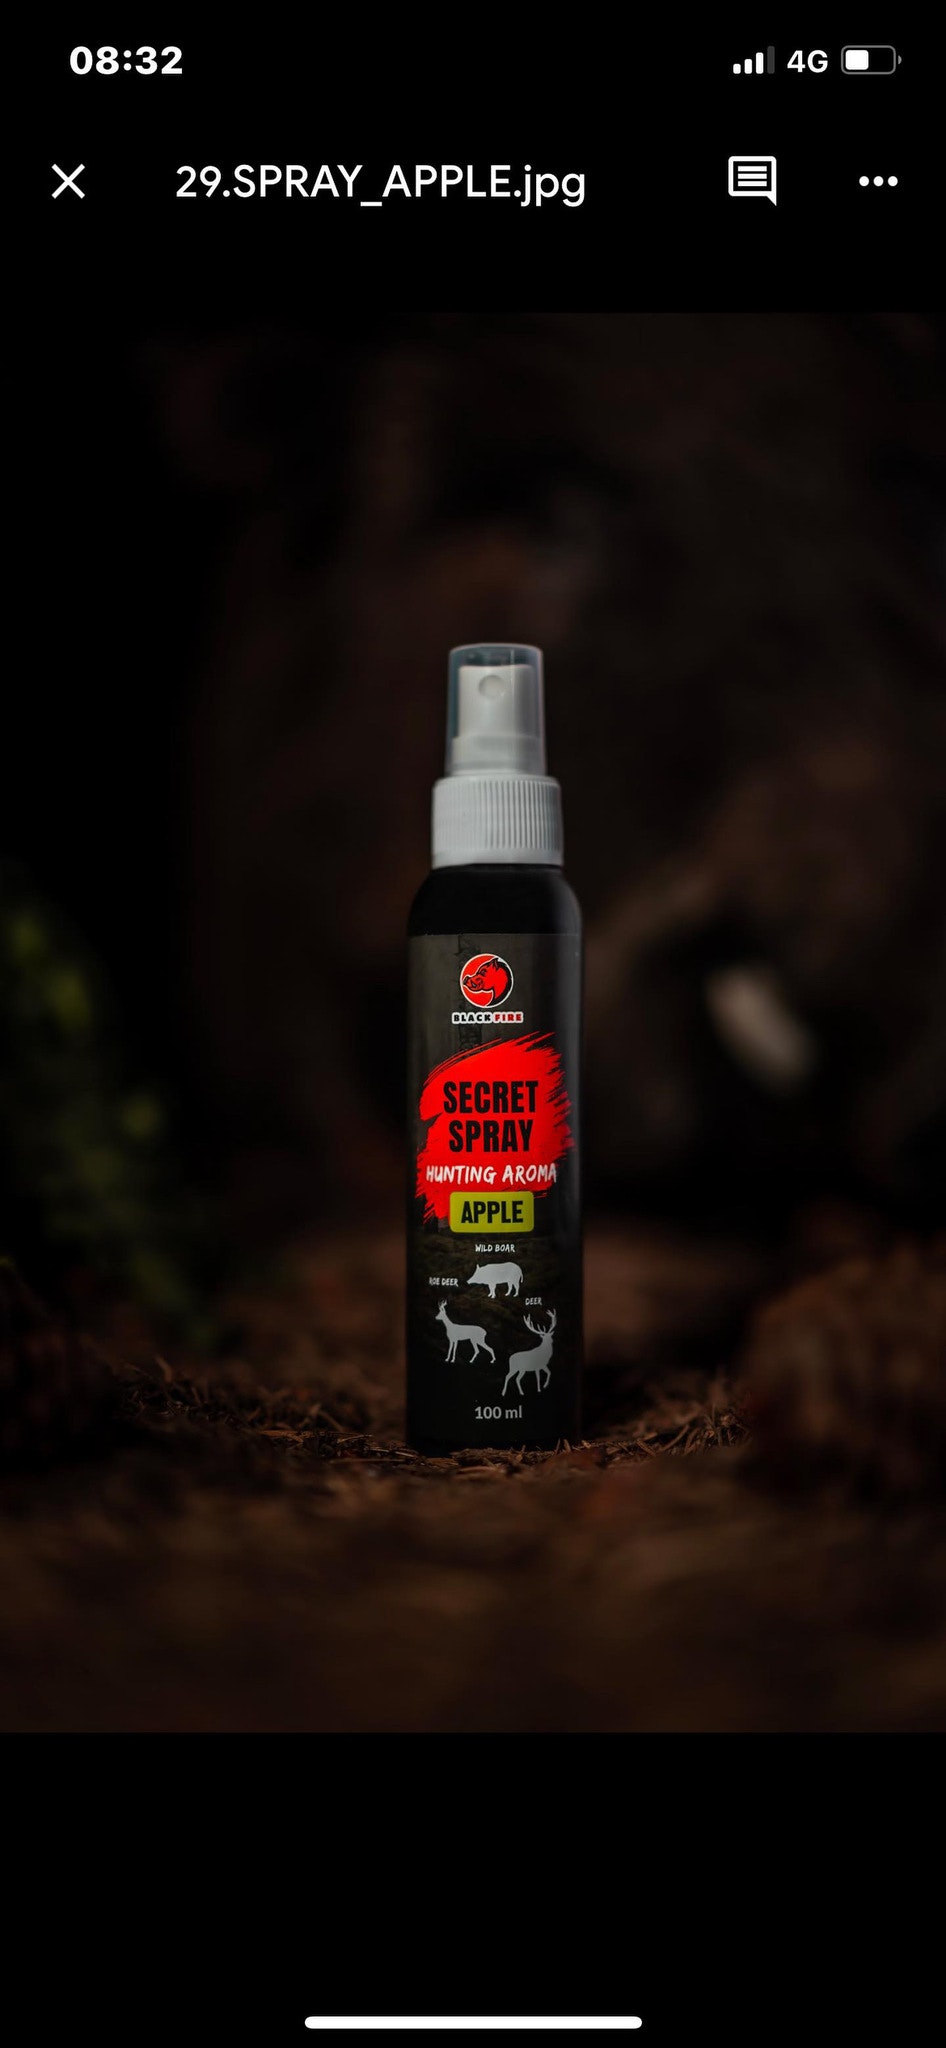 Blackfire secret spray